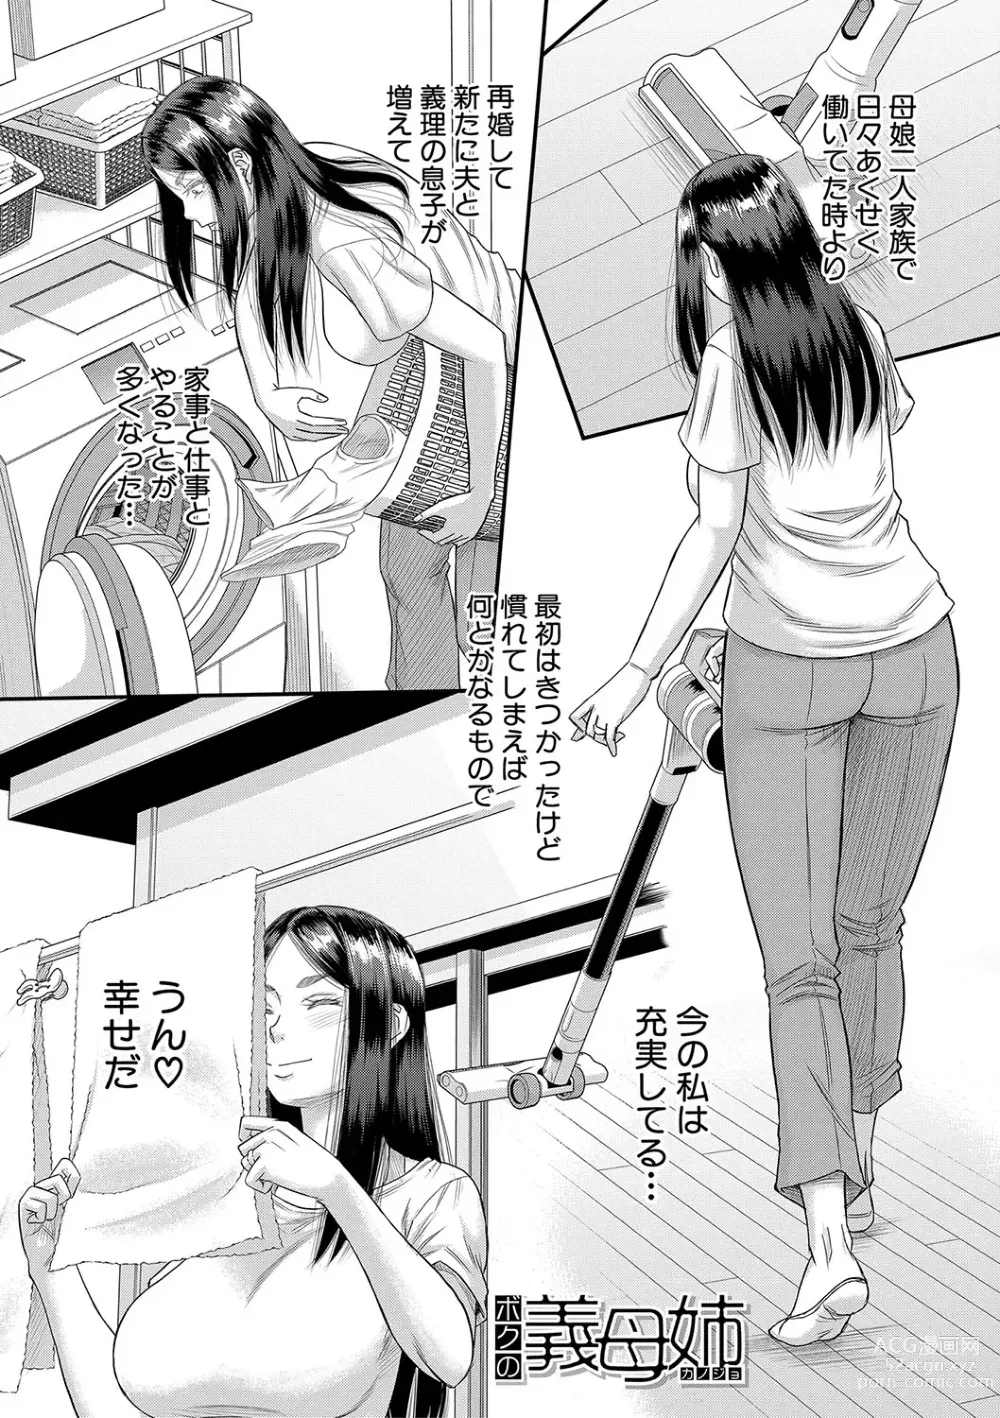 Page 28 of manga Boku no Kanojo ga...